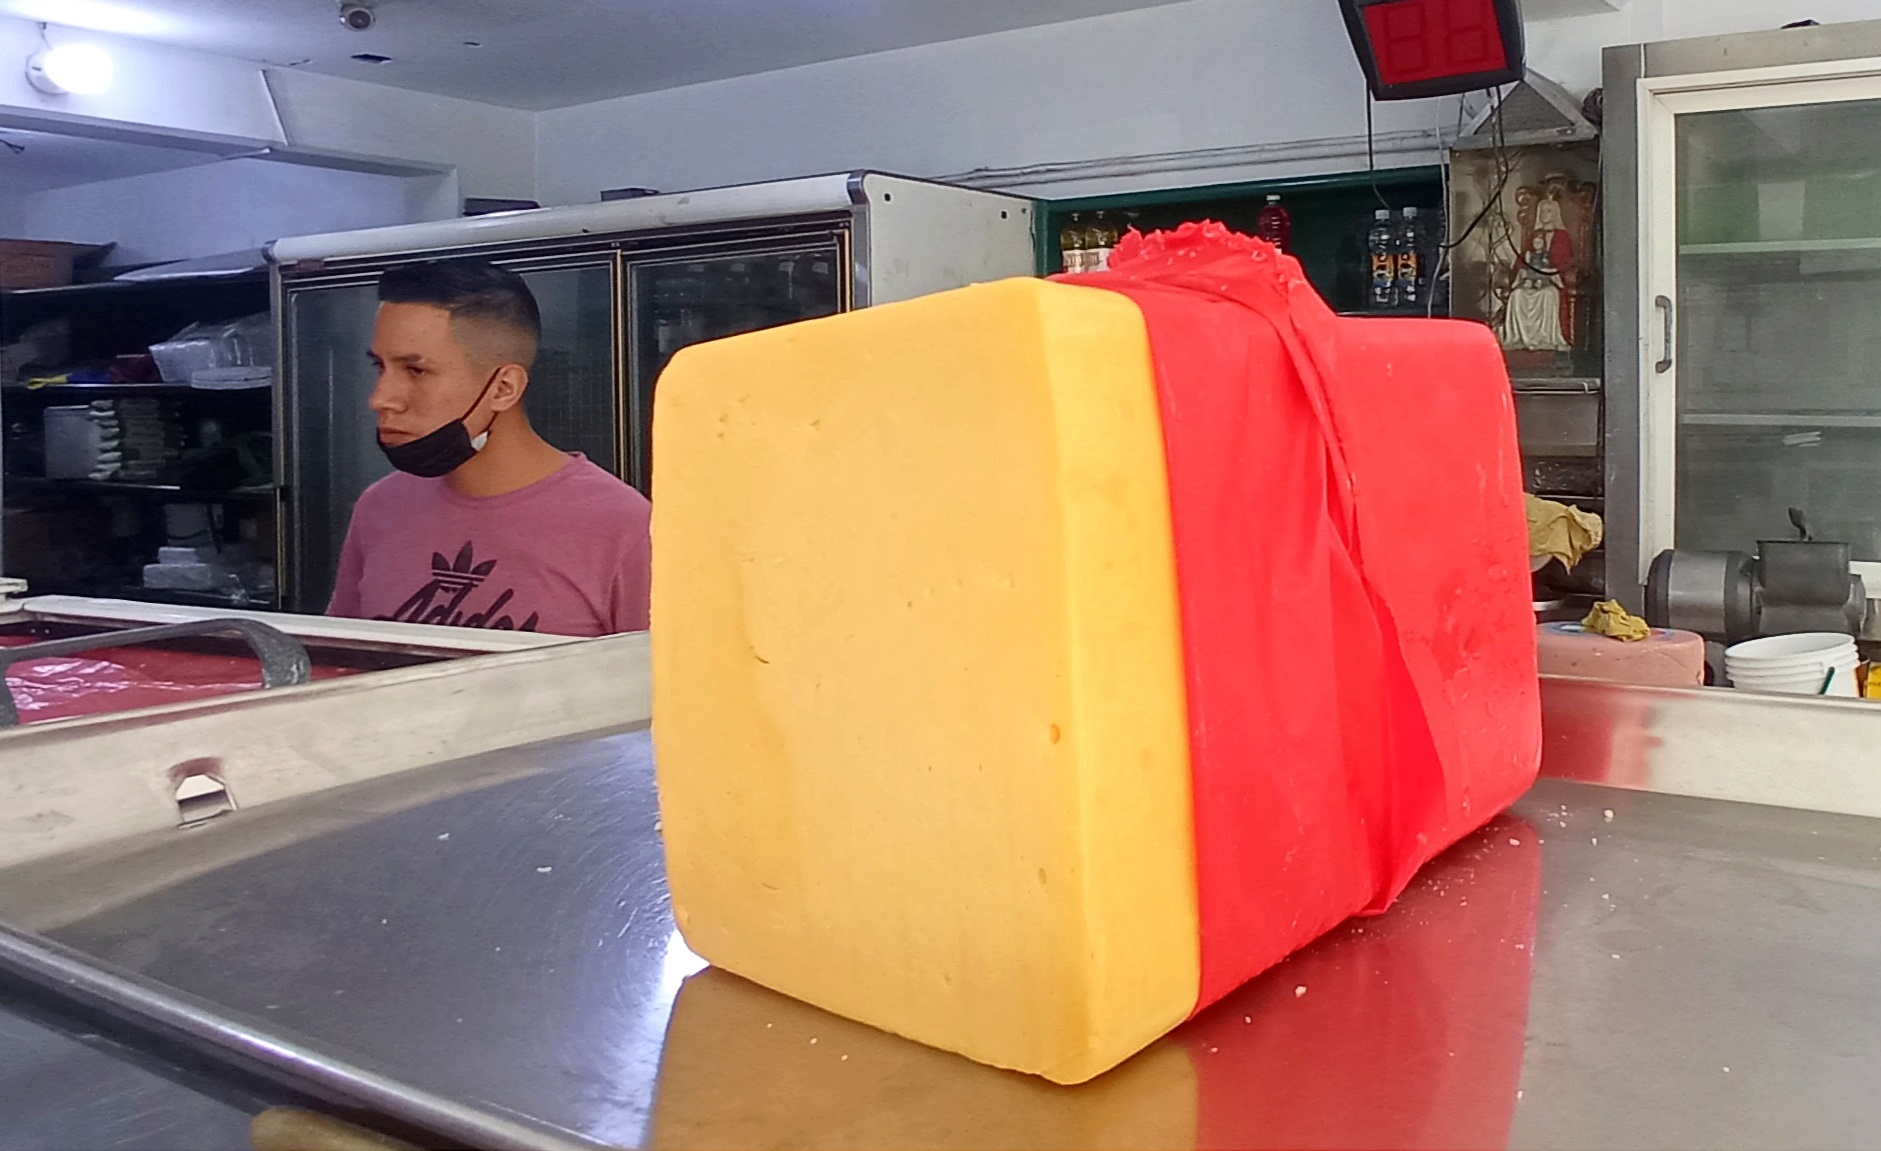 El queso amarillo entre los rubros menos accesibles